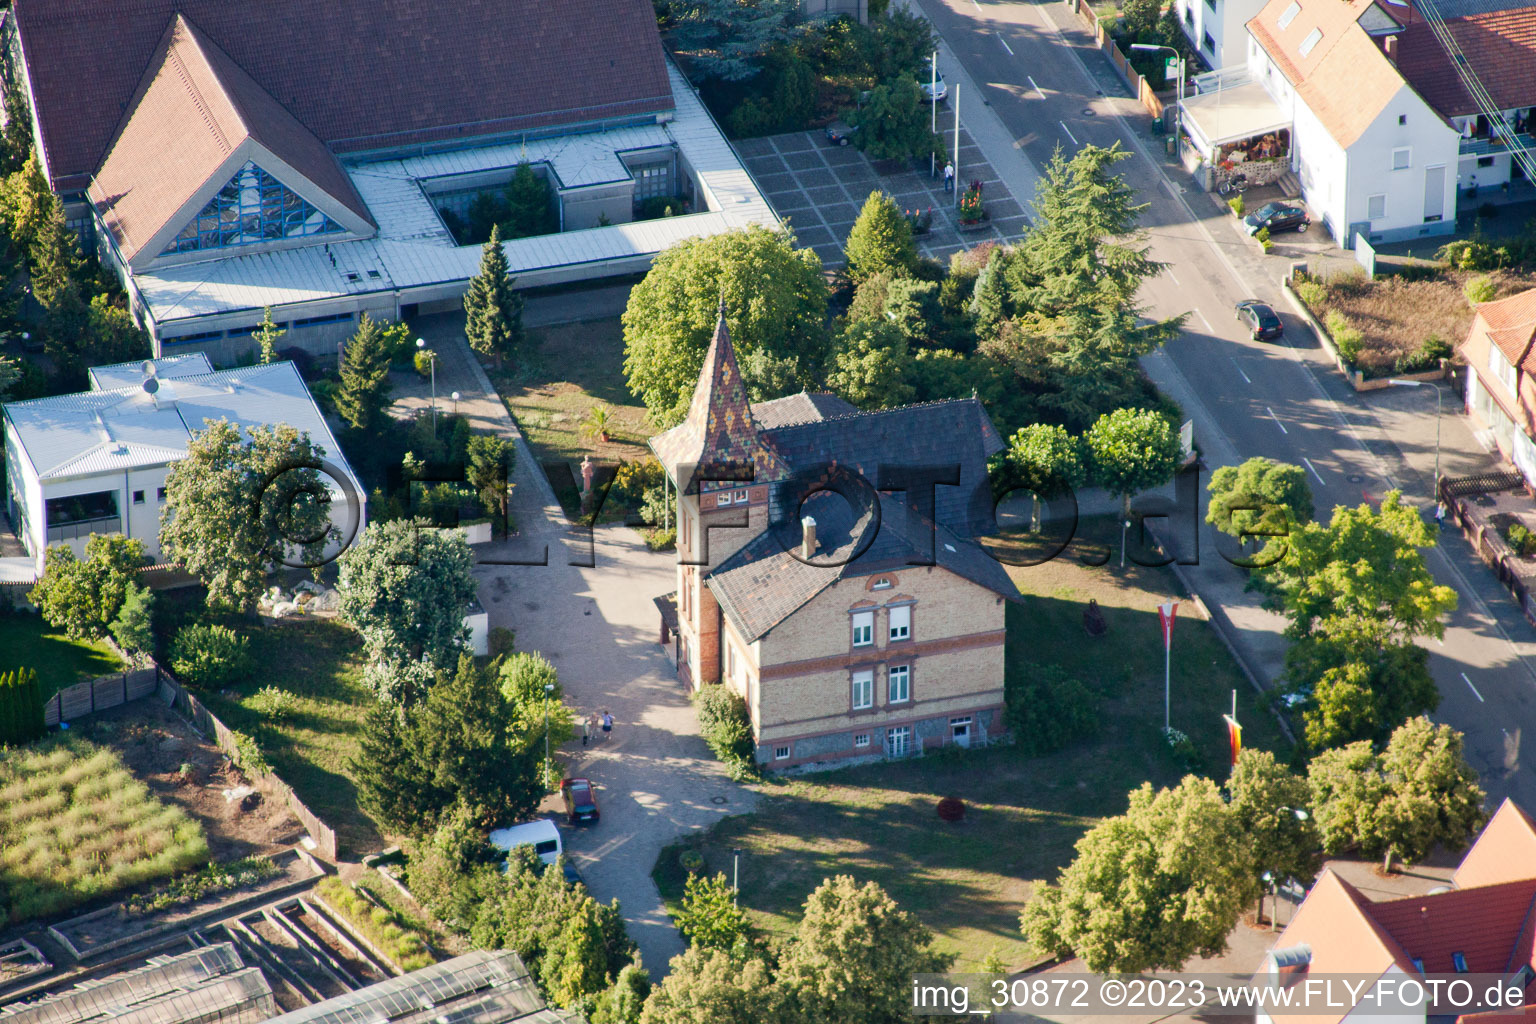 Vue aérienne de L'hôtel de ville à Jockgrim dans le département Rhénanie-Palatinat, Allemagne